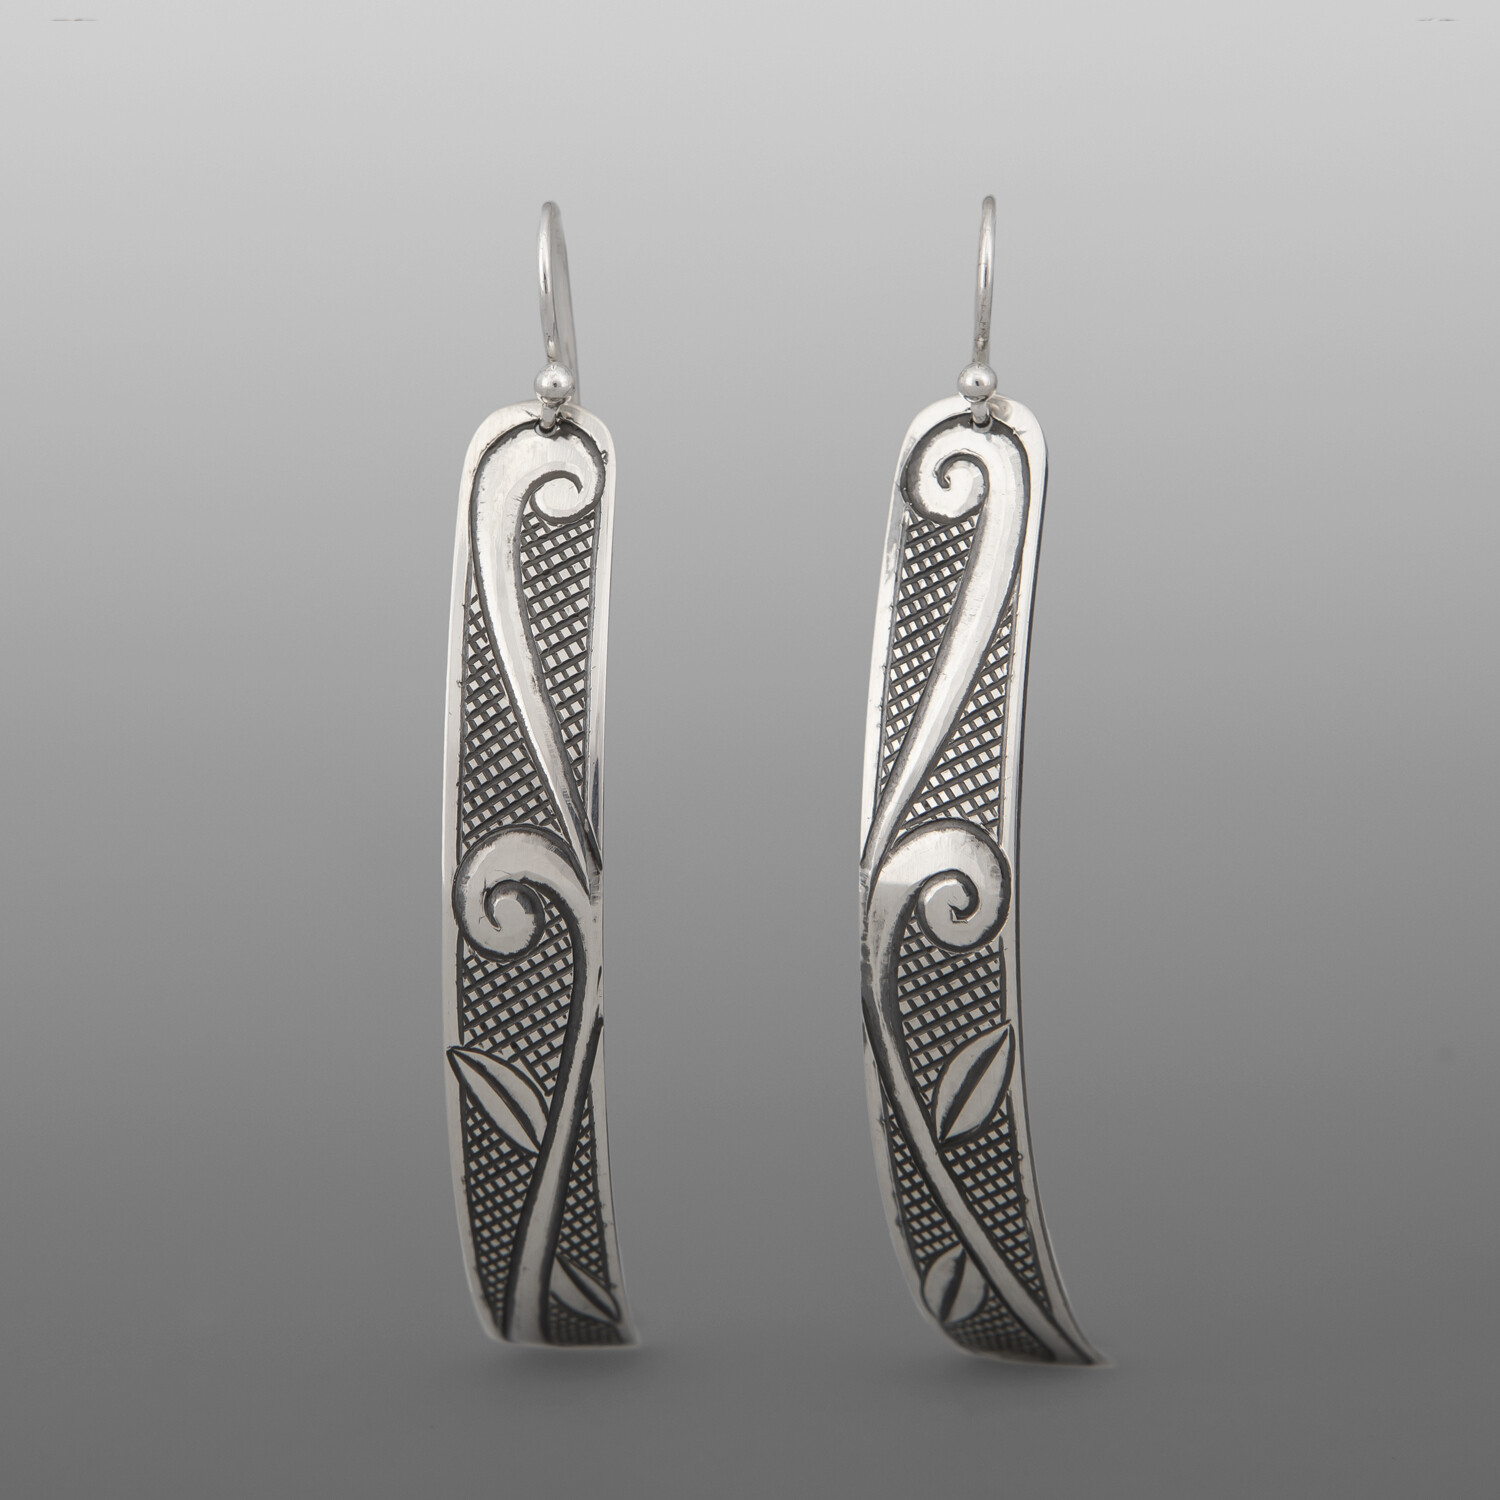 New Growth Earrings
Dean Hunt
Heiltsuk
Silver
2½”" x ¼”
$325